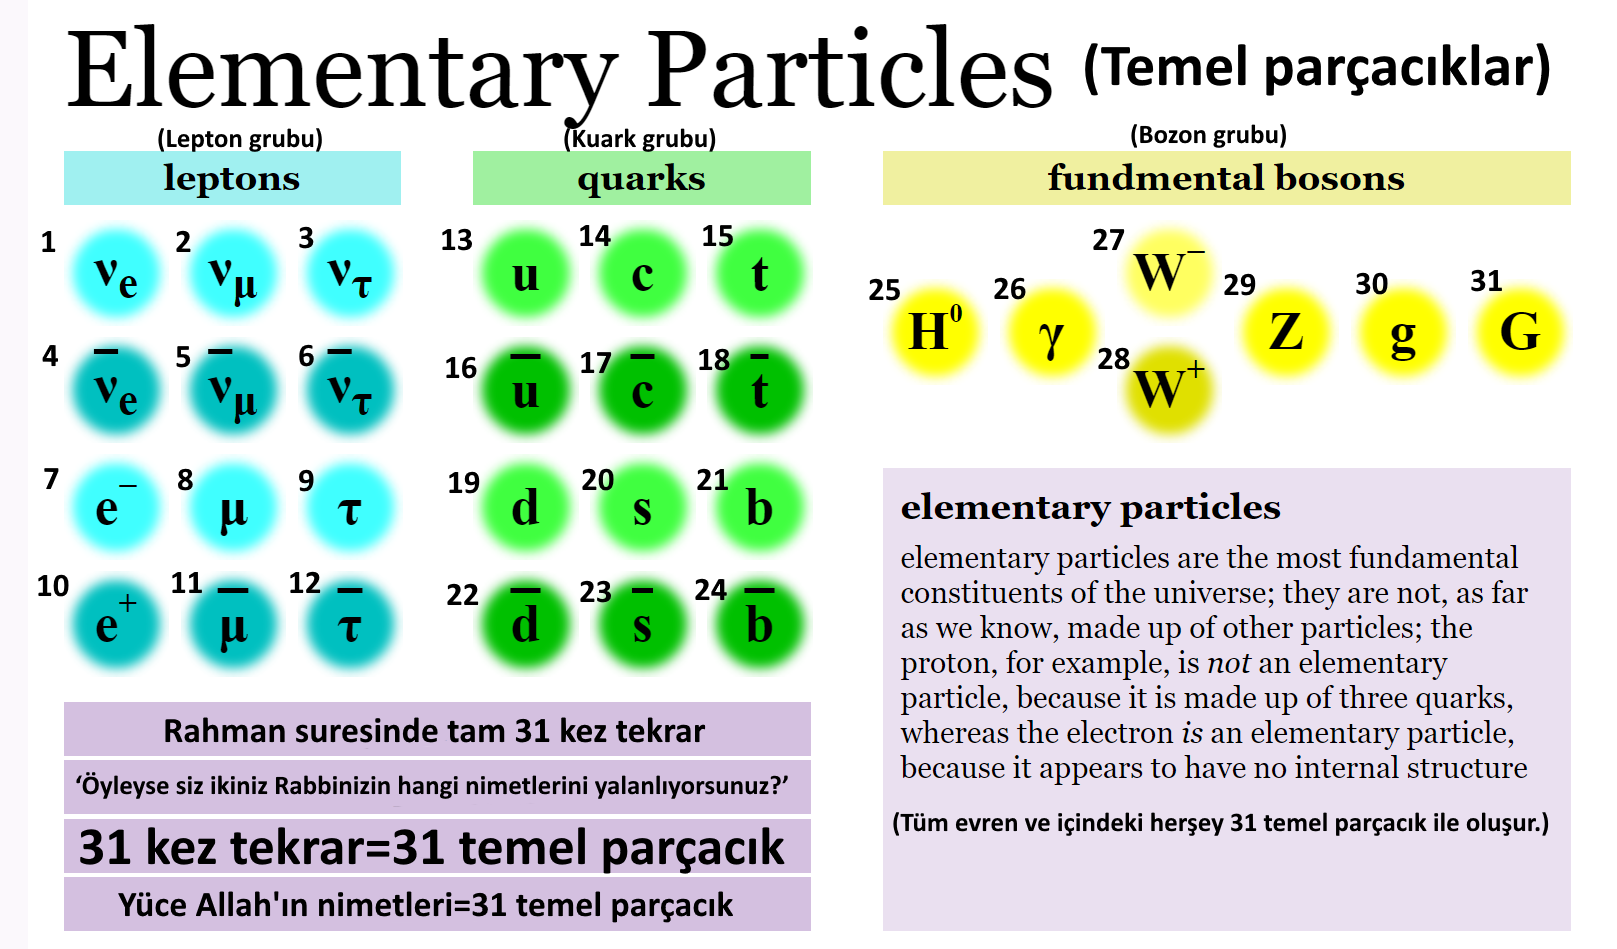 siz ikiniz rabbinizin hangi nimetlerini yalanliyorsunuz rahman suresi 31 tekrar 31 temel parcacik 31 elementary particles